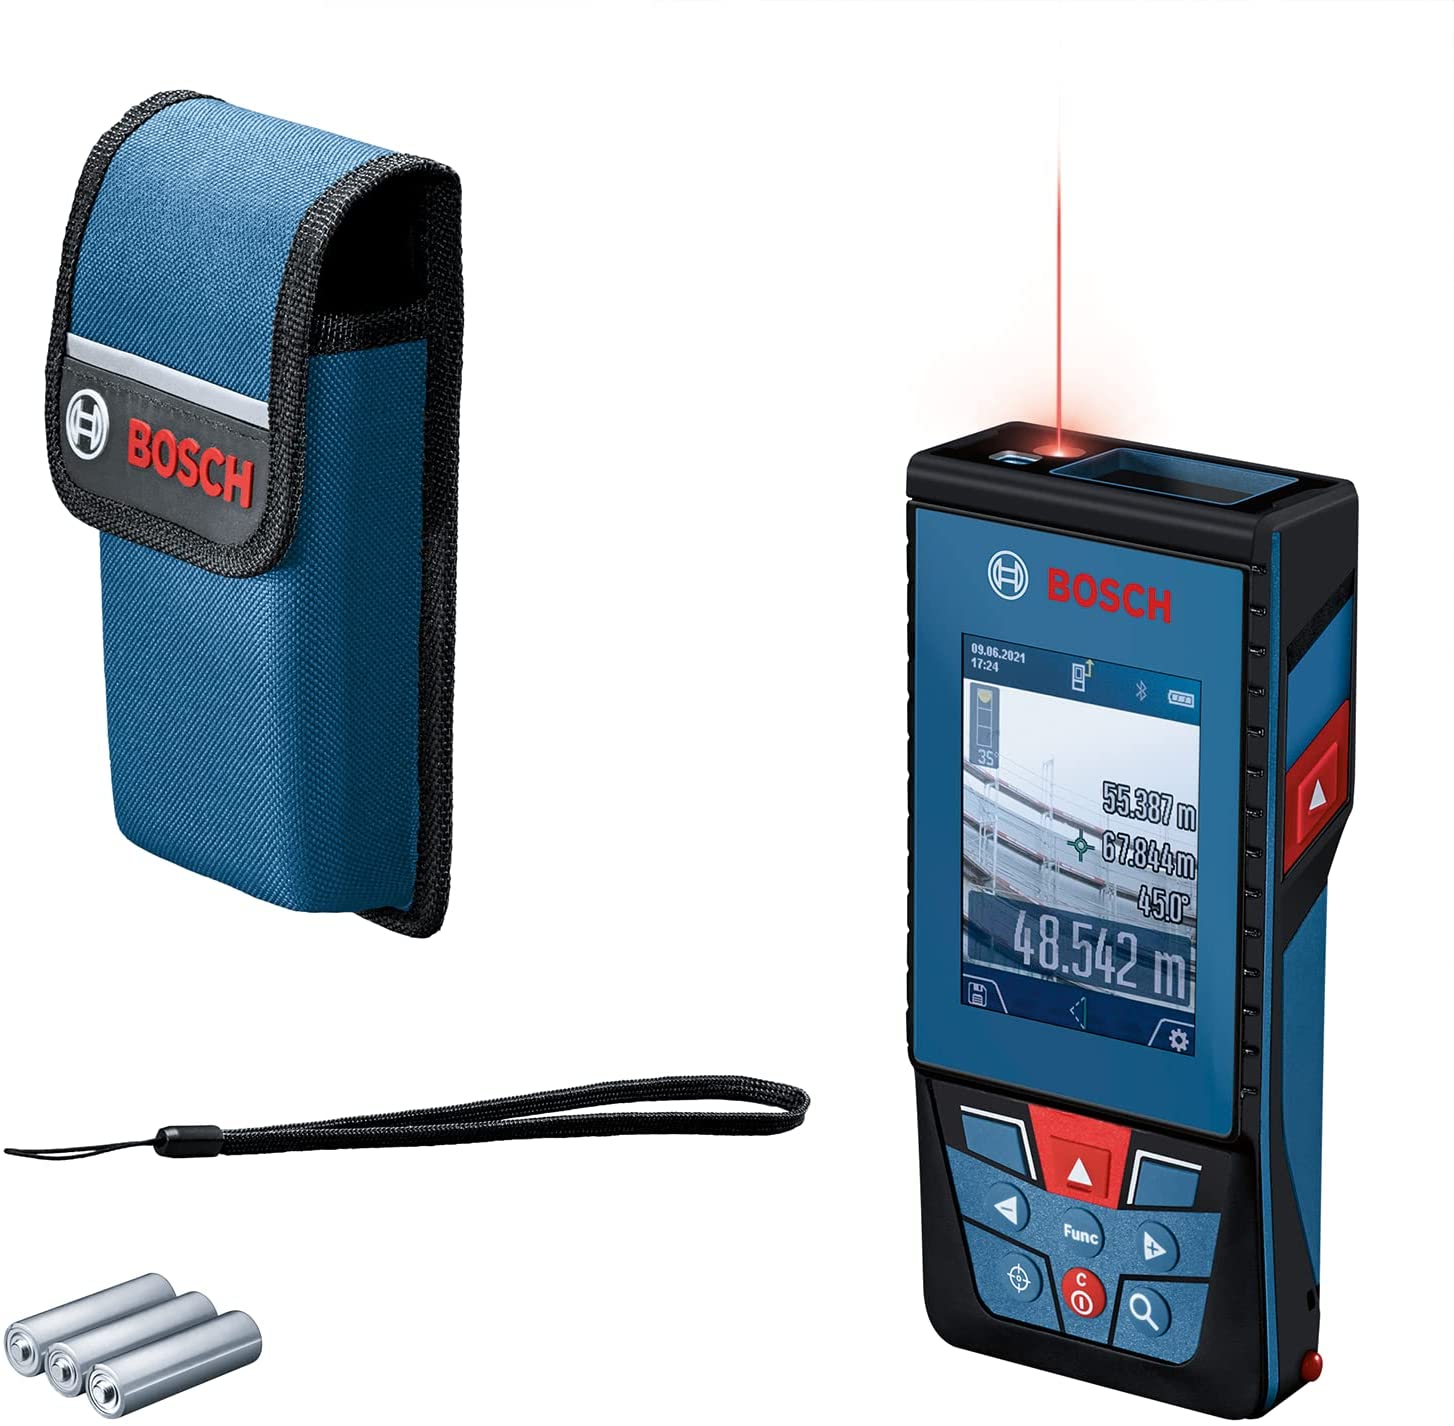 Bosch Laser rangefinder GLM 100-25 C Professional (blue/black, range 100m, red laser line)